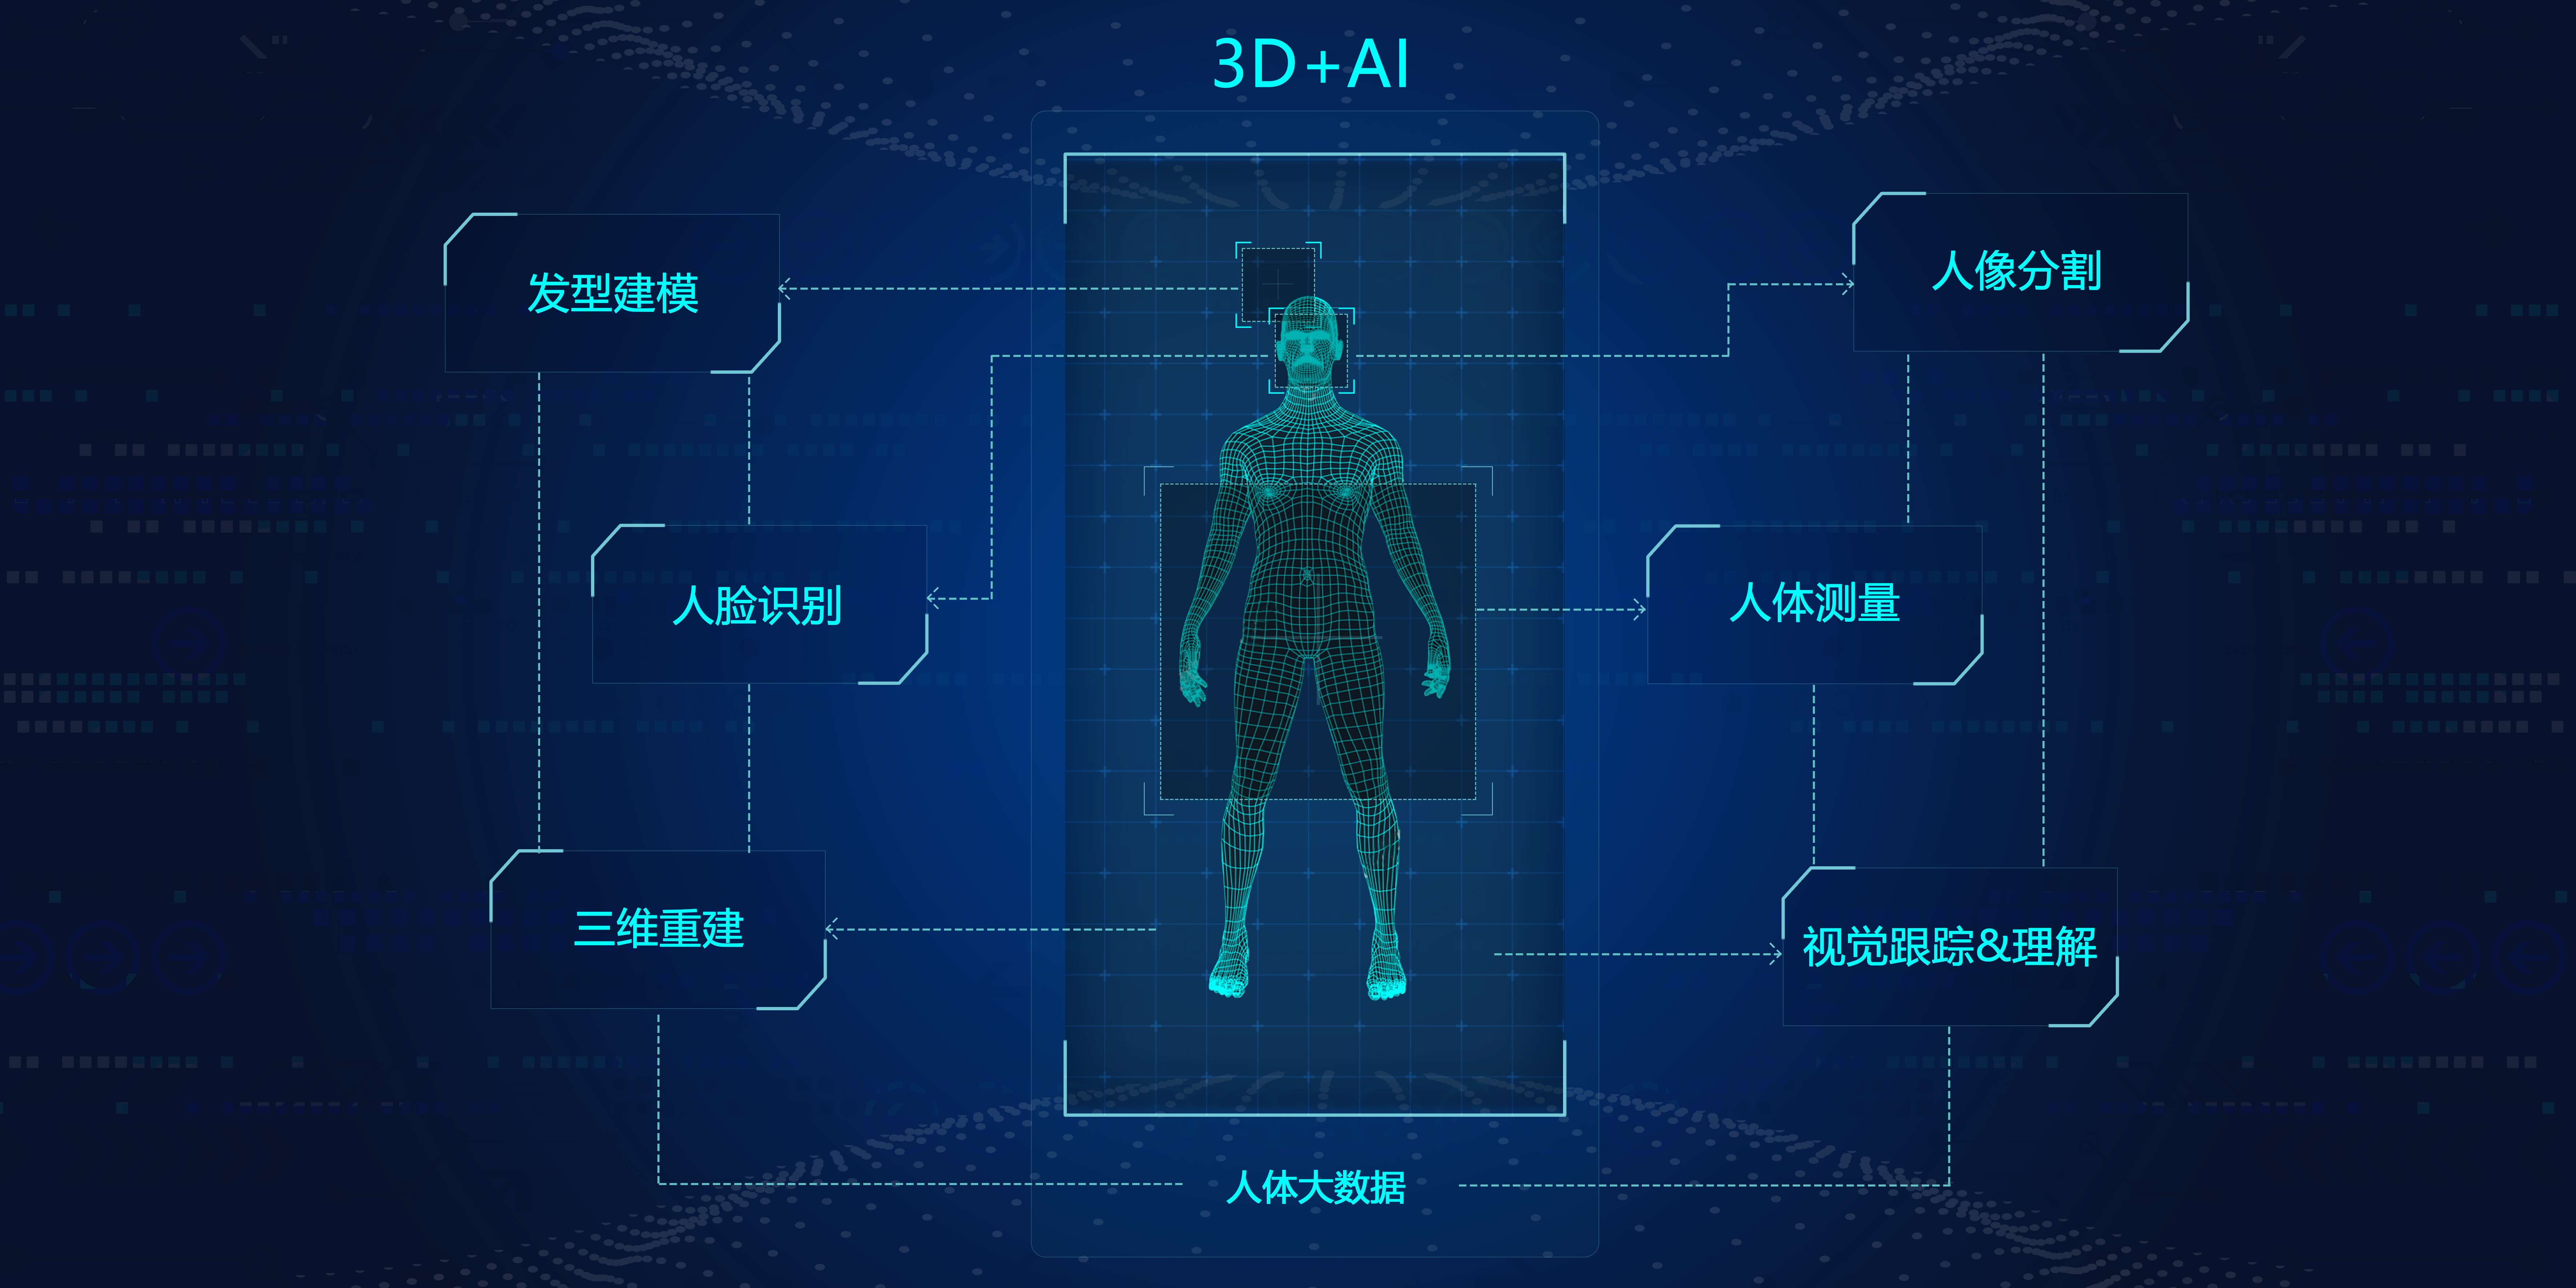 基于全维度人工智能感知技术，“云之梦”想要打造一个亚洲人体数据库